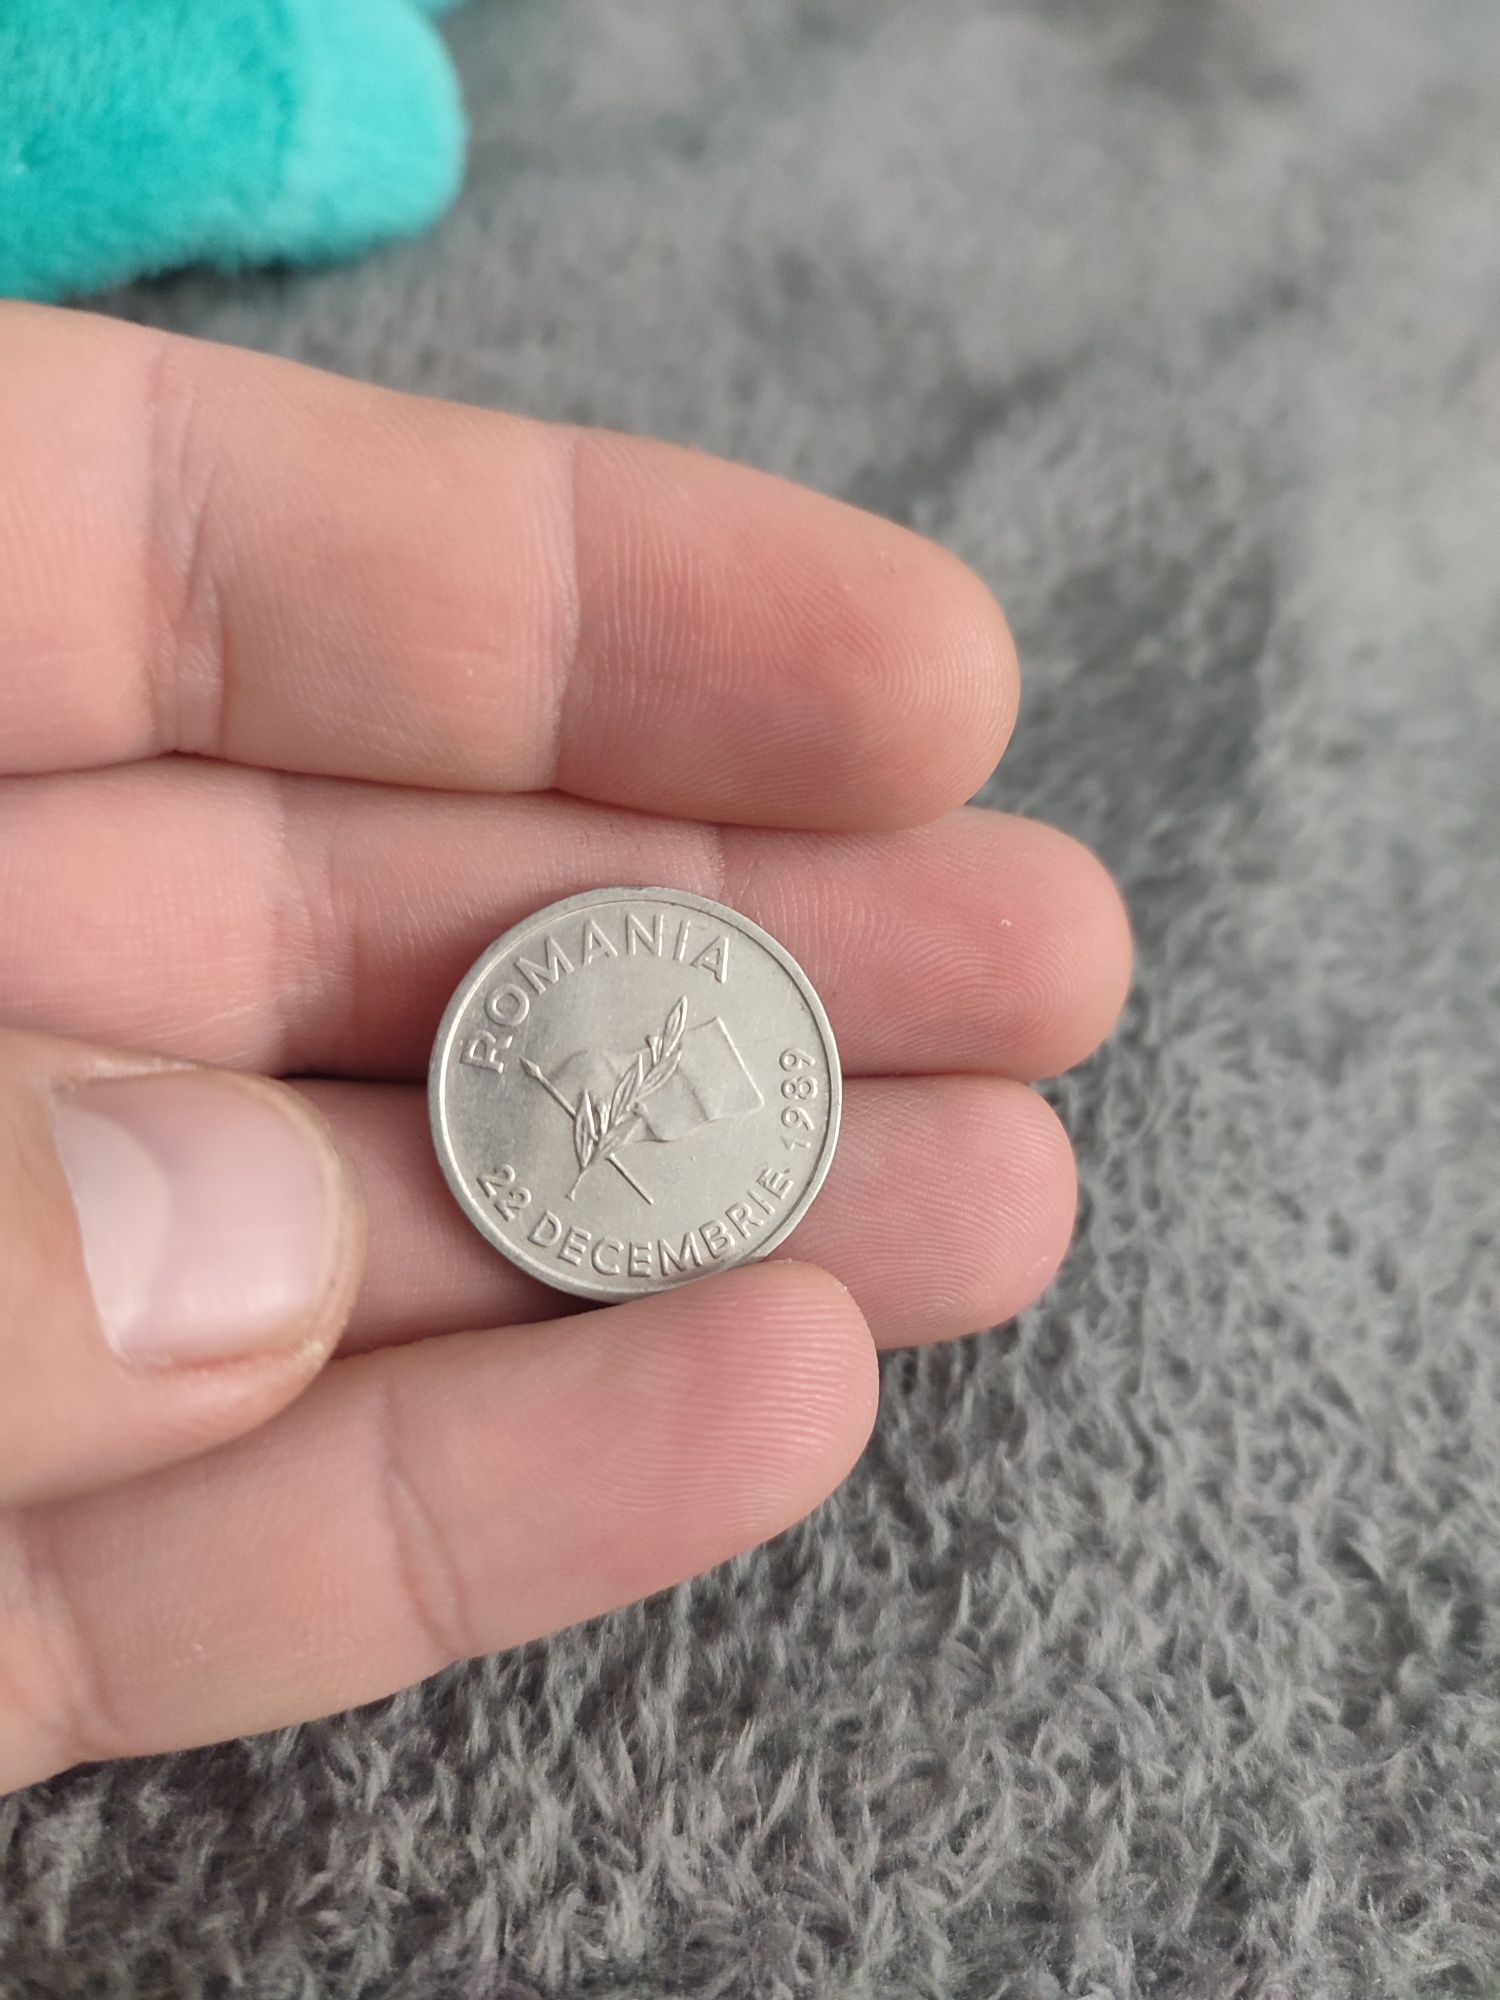 Vând bacnote românești+ monede